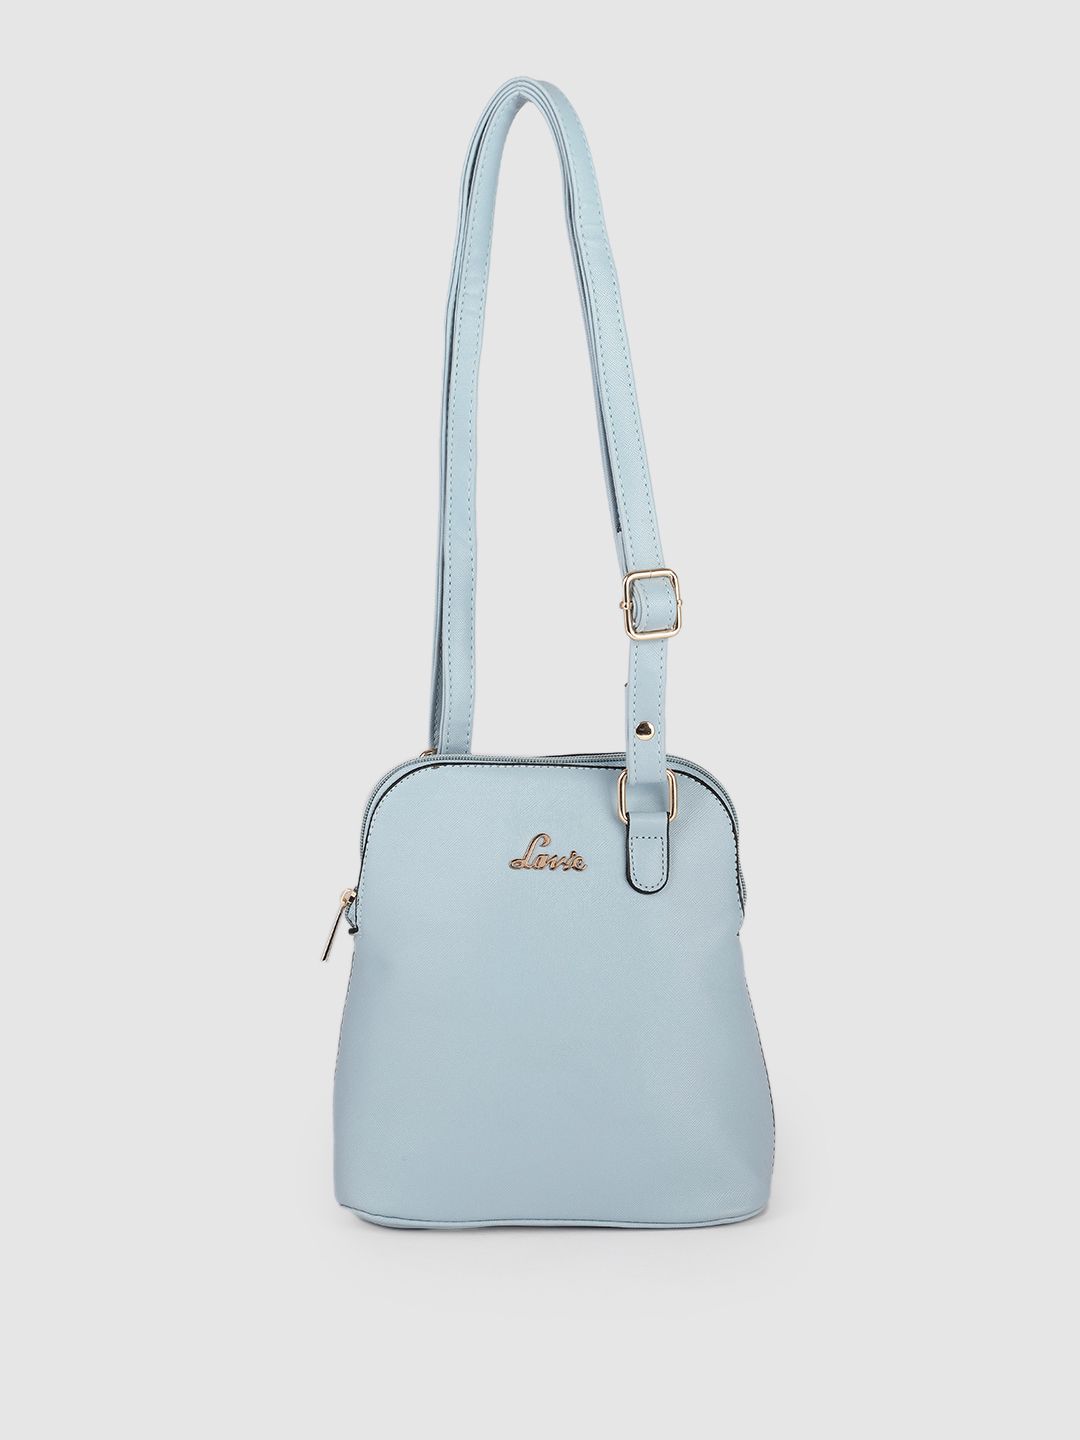 Lavie Blue MERLIN Shoulder Bag Price in India